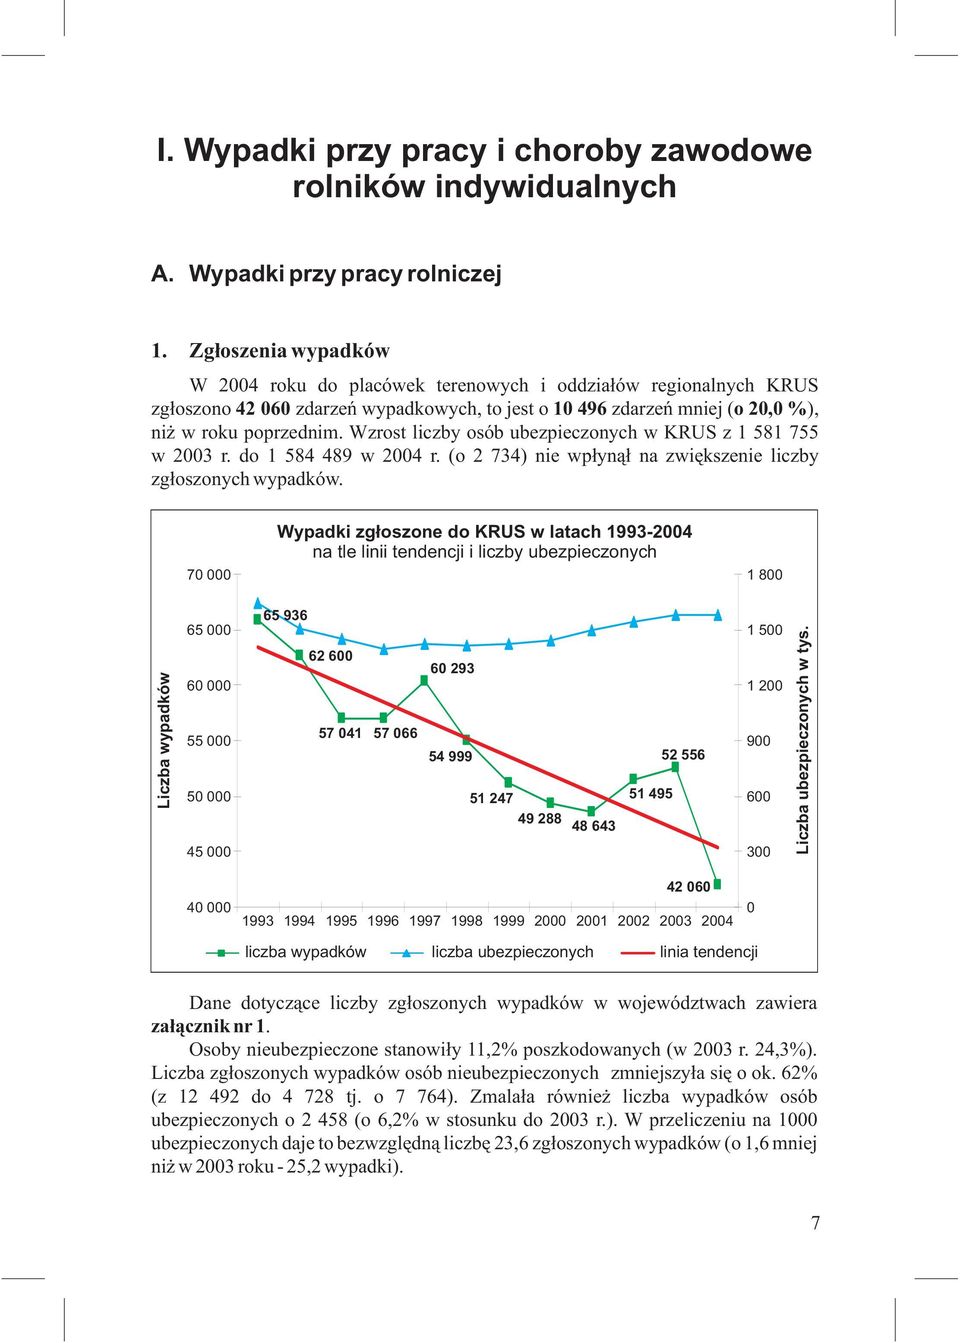 Wzrost liczby osób ubezpieczonych w KRUS z 1 581 755 w 2003 r. do 1 584 489 w 2004 r. (o 2 734) nie wpłynął na zwiększenie liczby zgłoszonych wypadków.